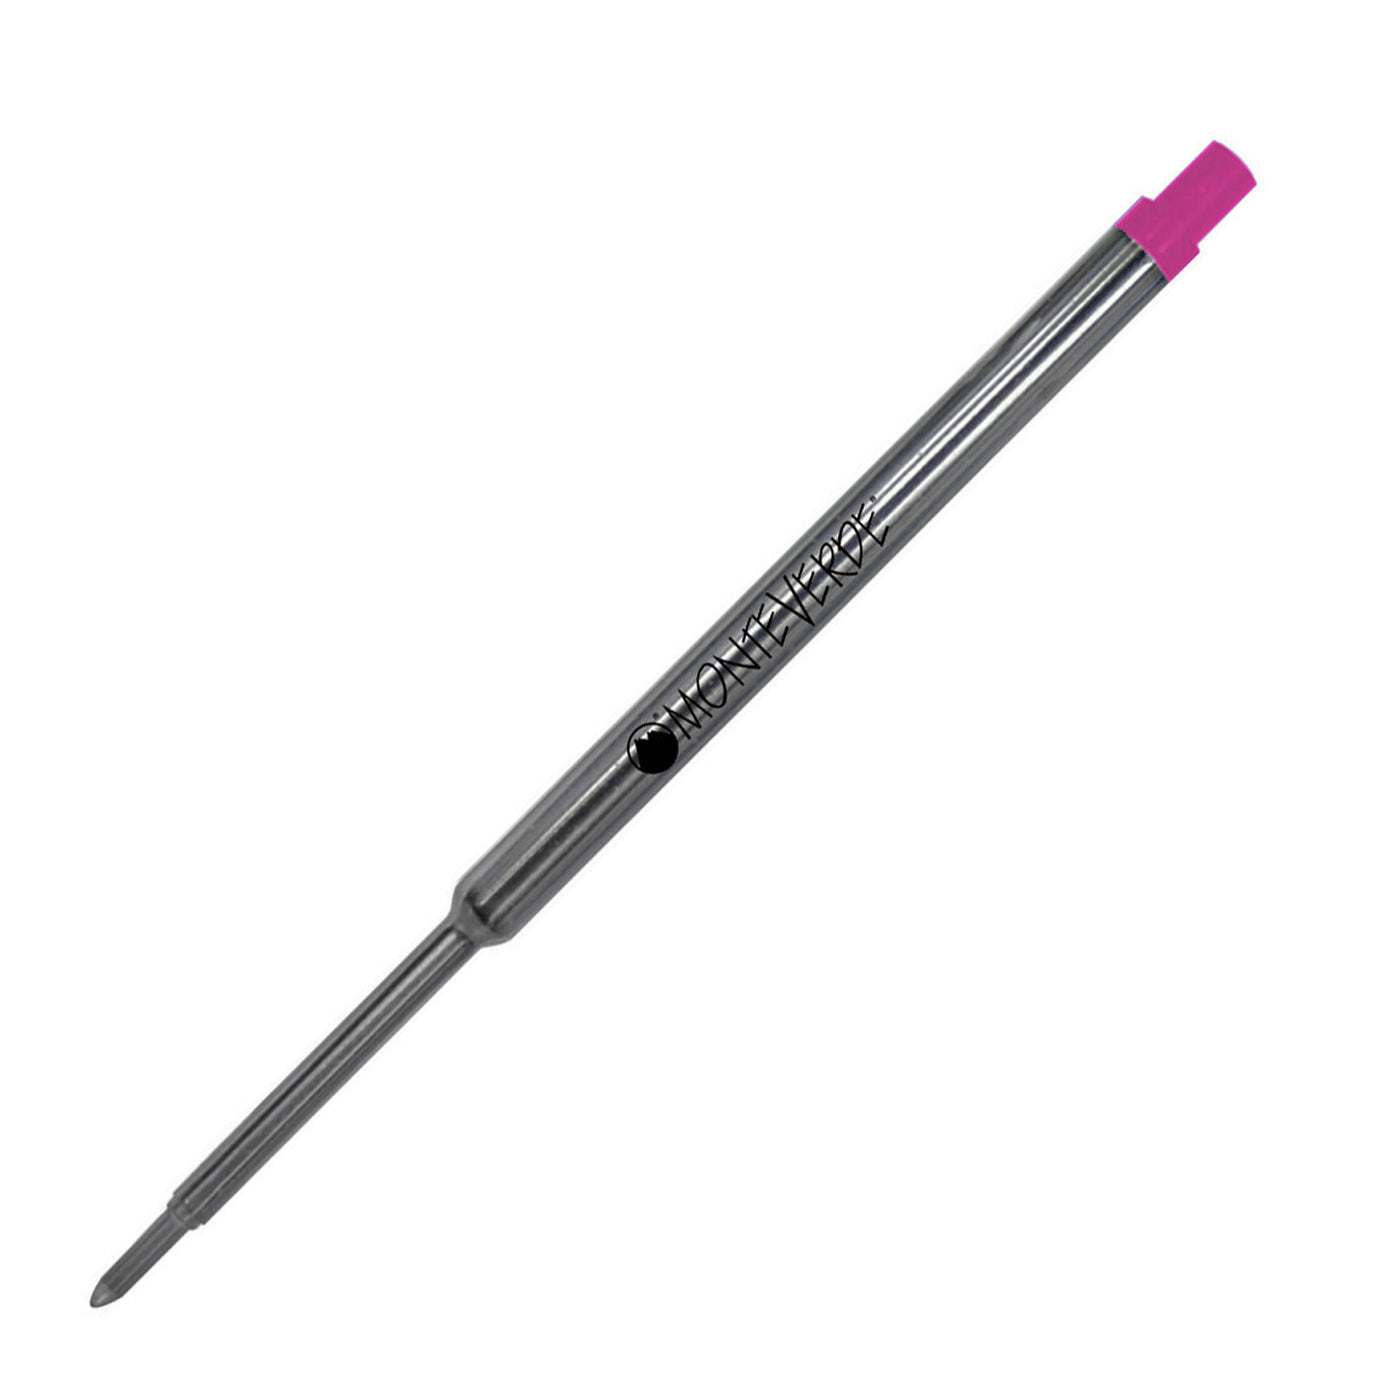 Monteverde Ball Pen Refill for Waterman - Medium - Pink - Pack of 2 2